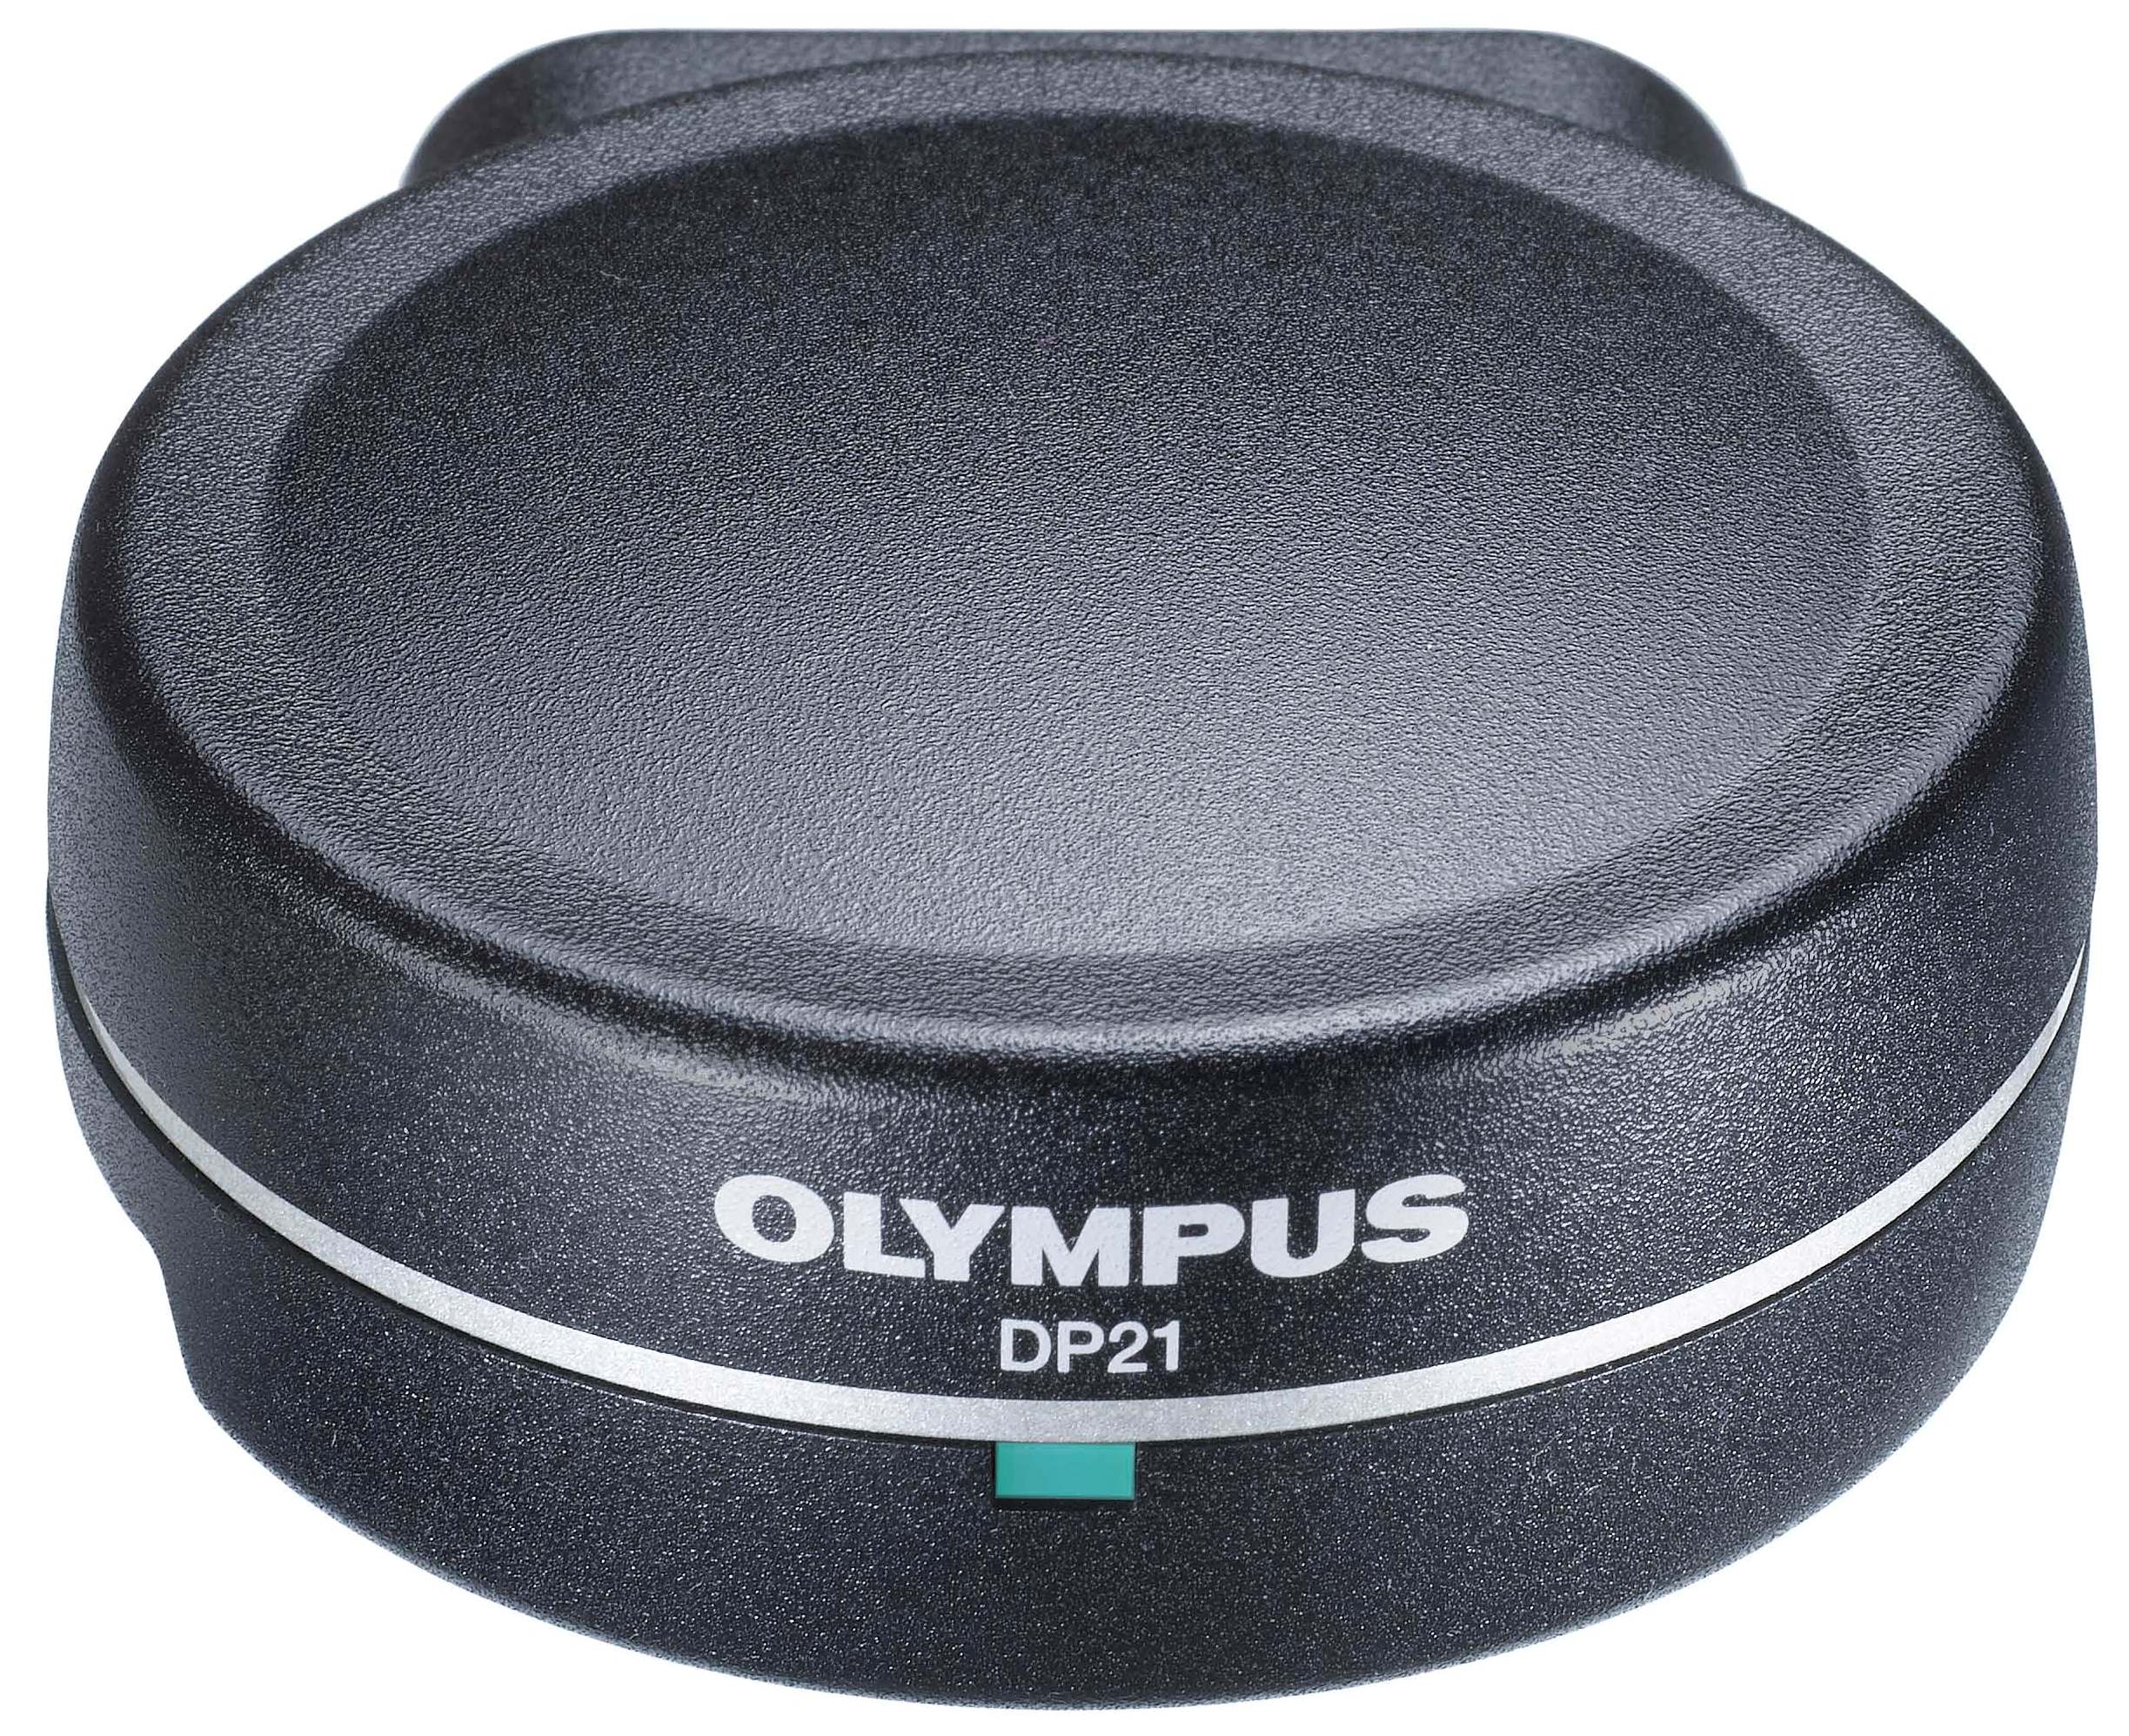 Olympus DP21.jpg